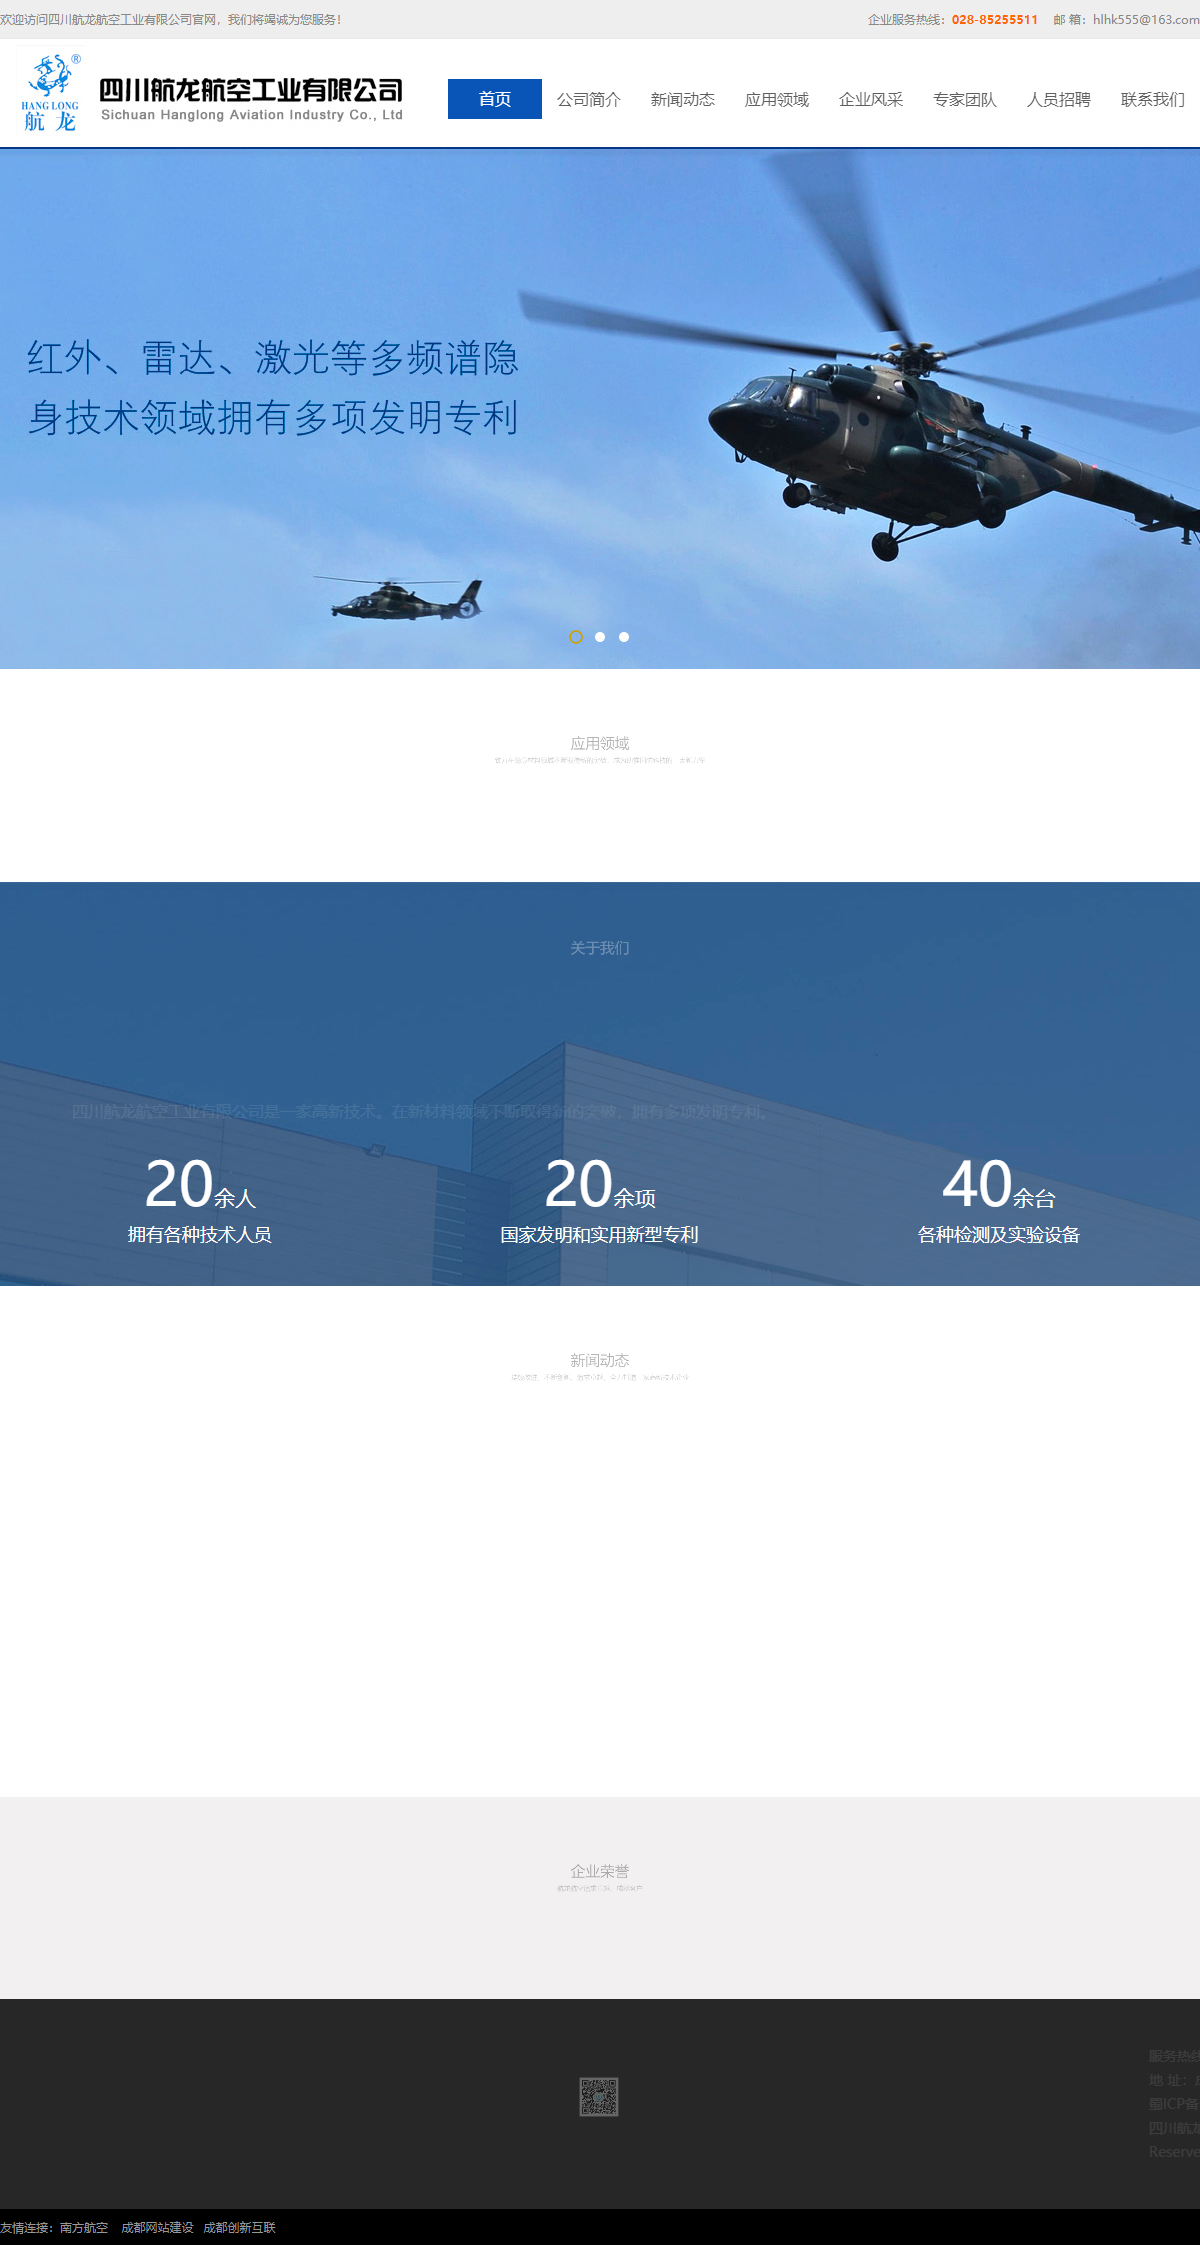 四川航龙航空工业有限公司网站案例